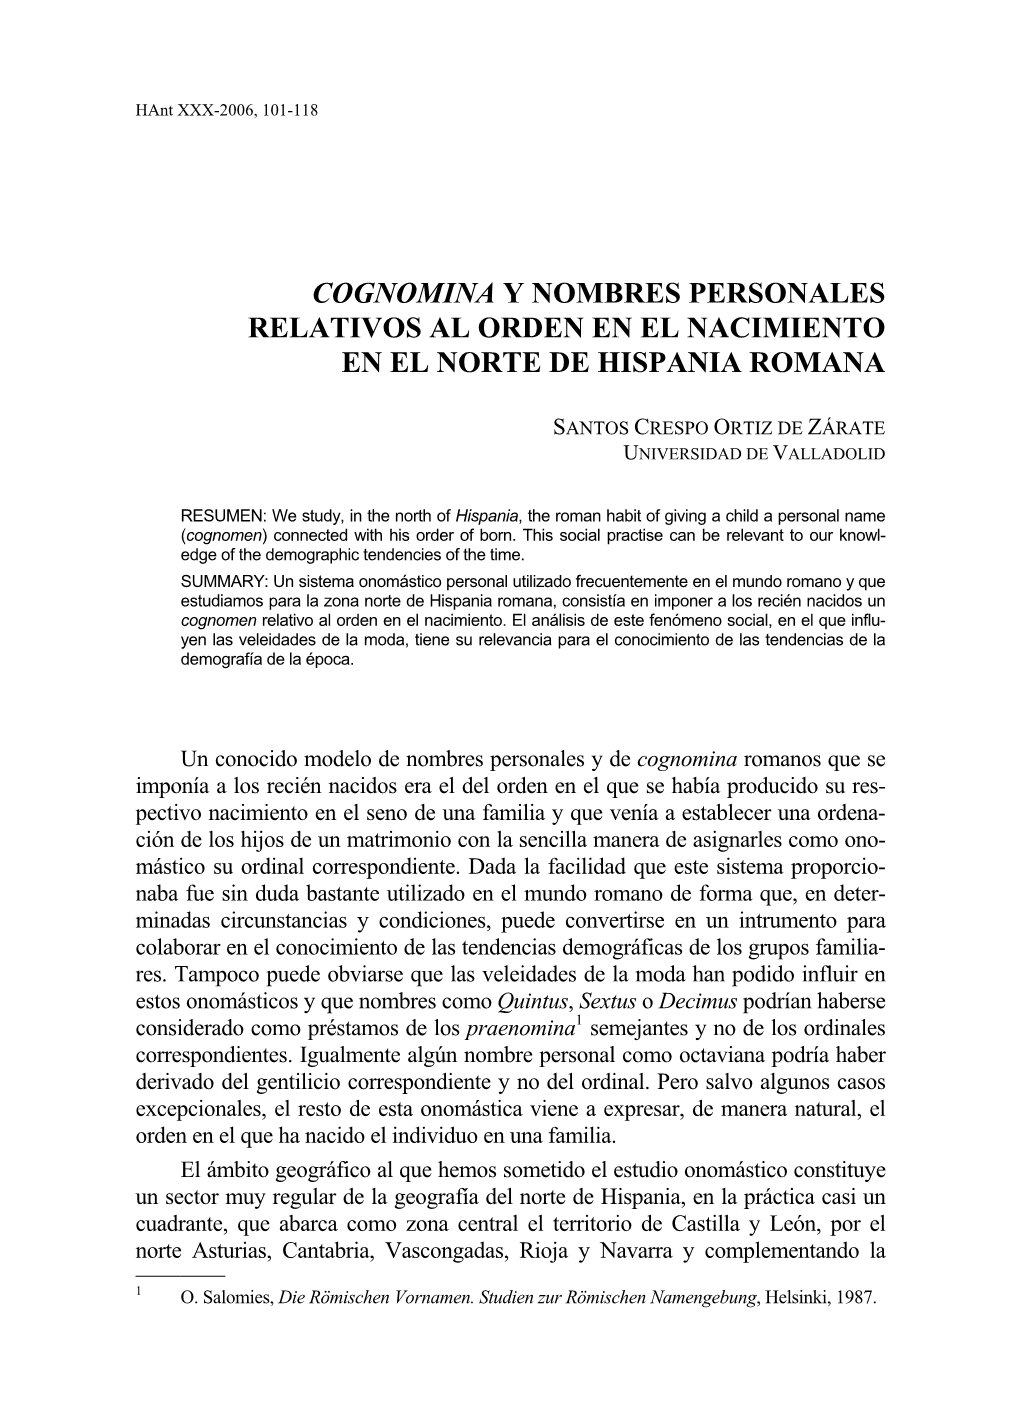 Cognomina Y Nombres Personales Relativos Al Orden En El Nacimiento En El Norte De Hispania Romana